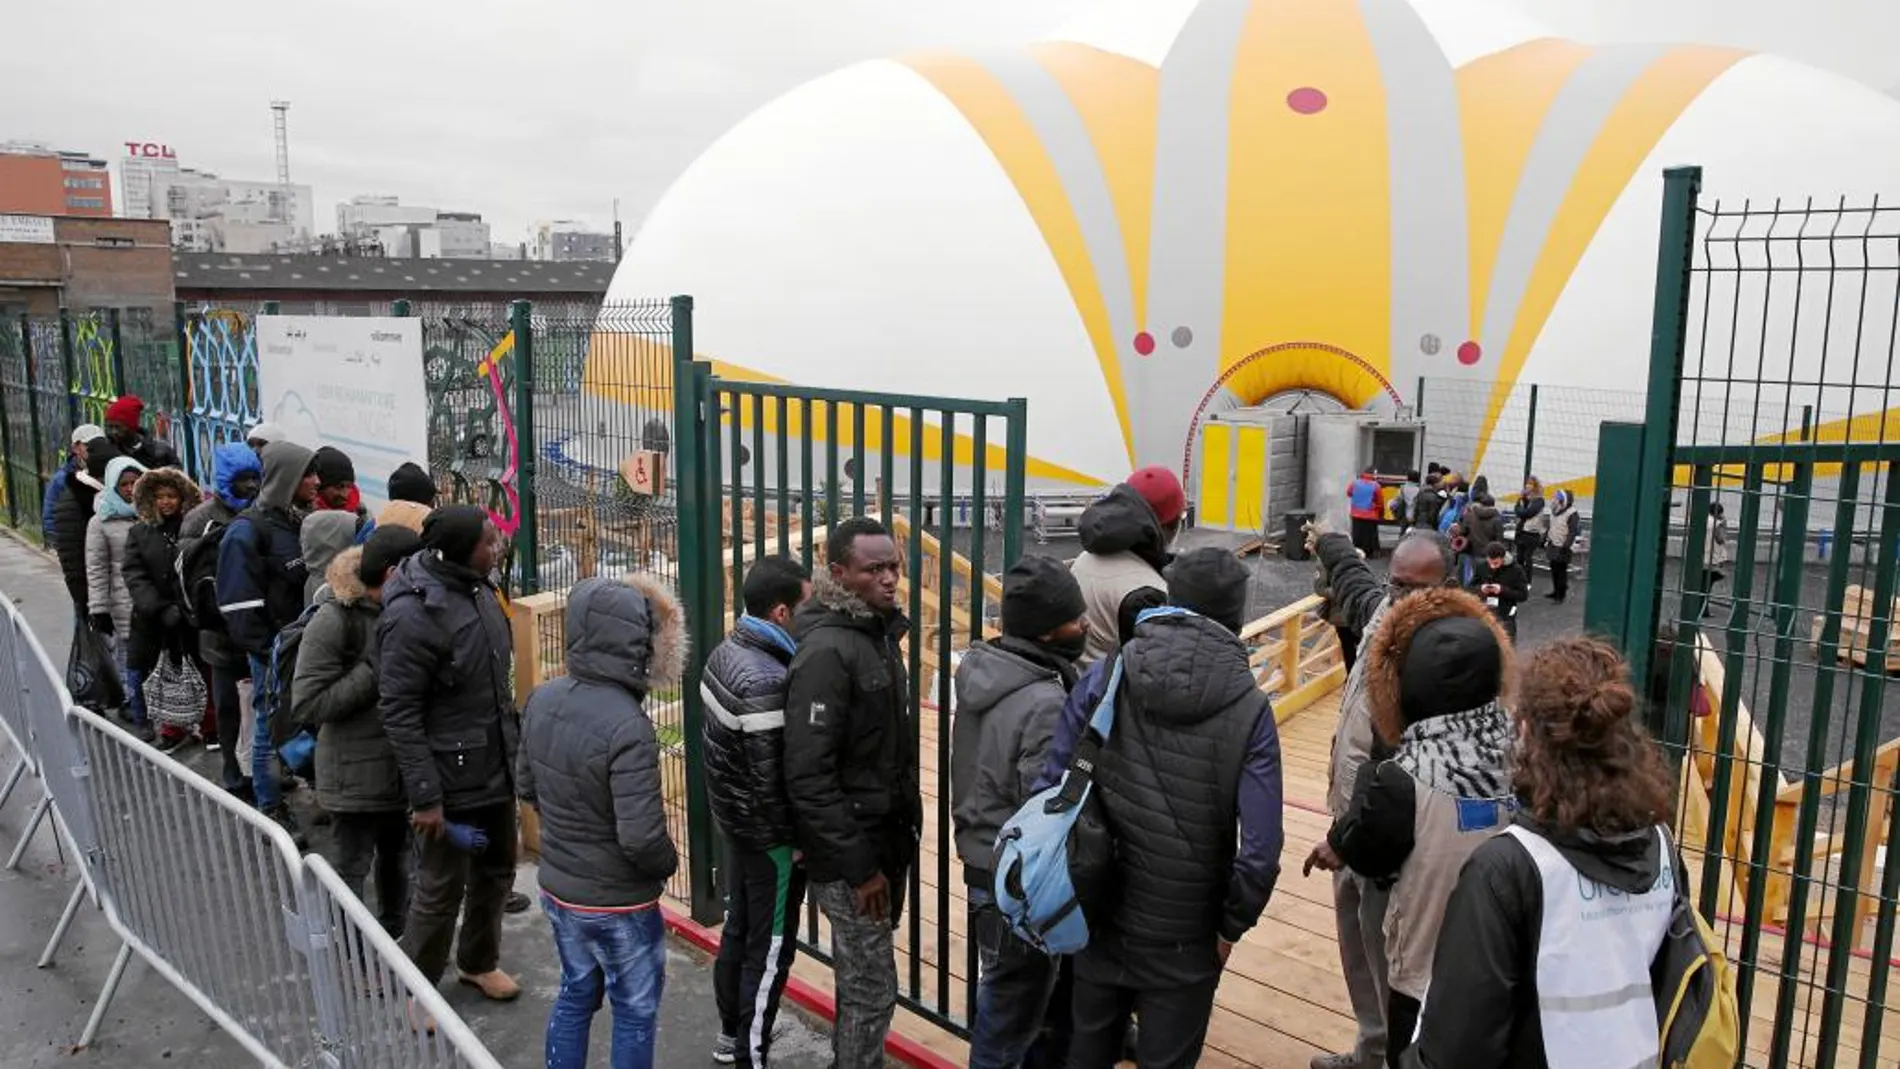 Migrantes acceden al centro de acogida que abrió sus puertas ayer en París y que puede acoger a 400 personas